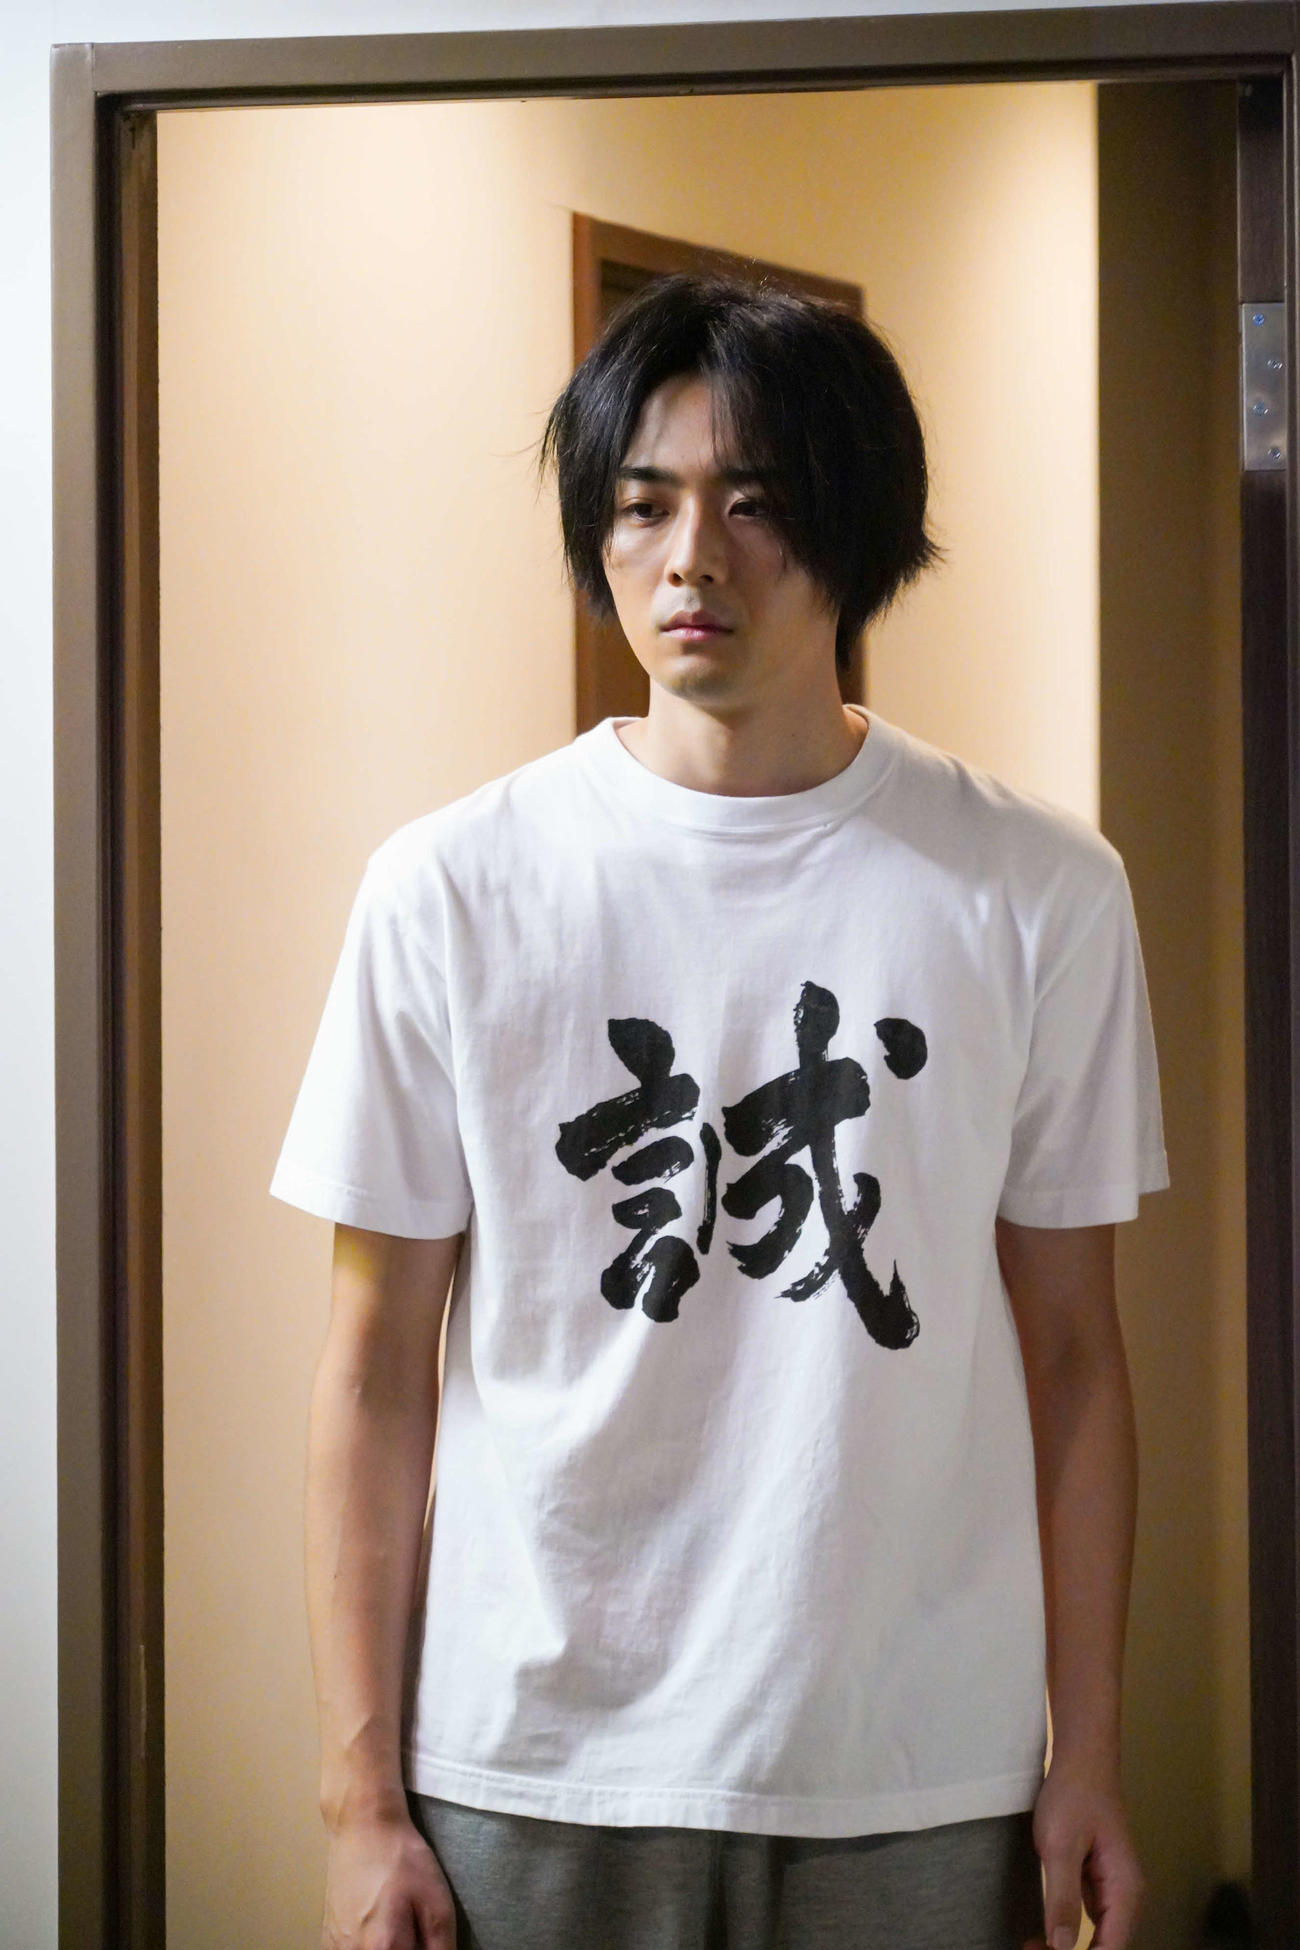 日本テレビ系連続ドラマ「35歳の少女」第1話で「誠」と書かれたTシャツを着る達也を演じた竜星涼